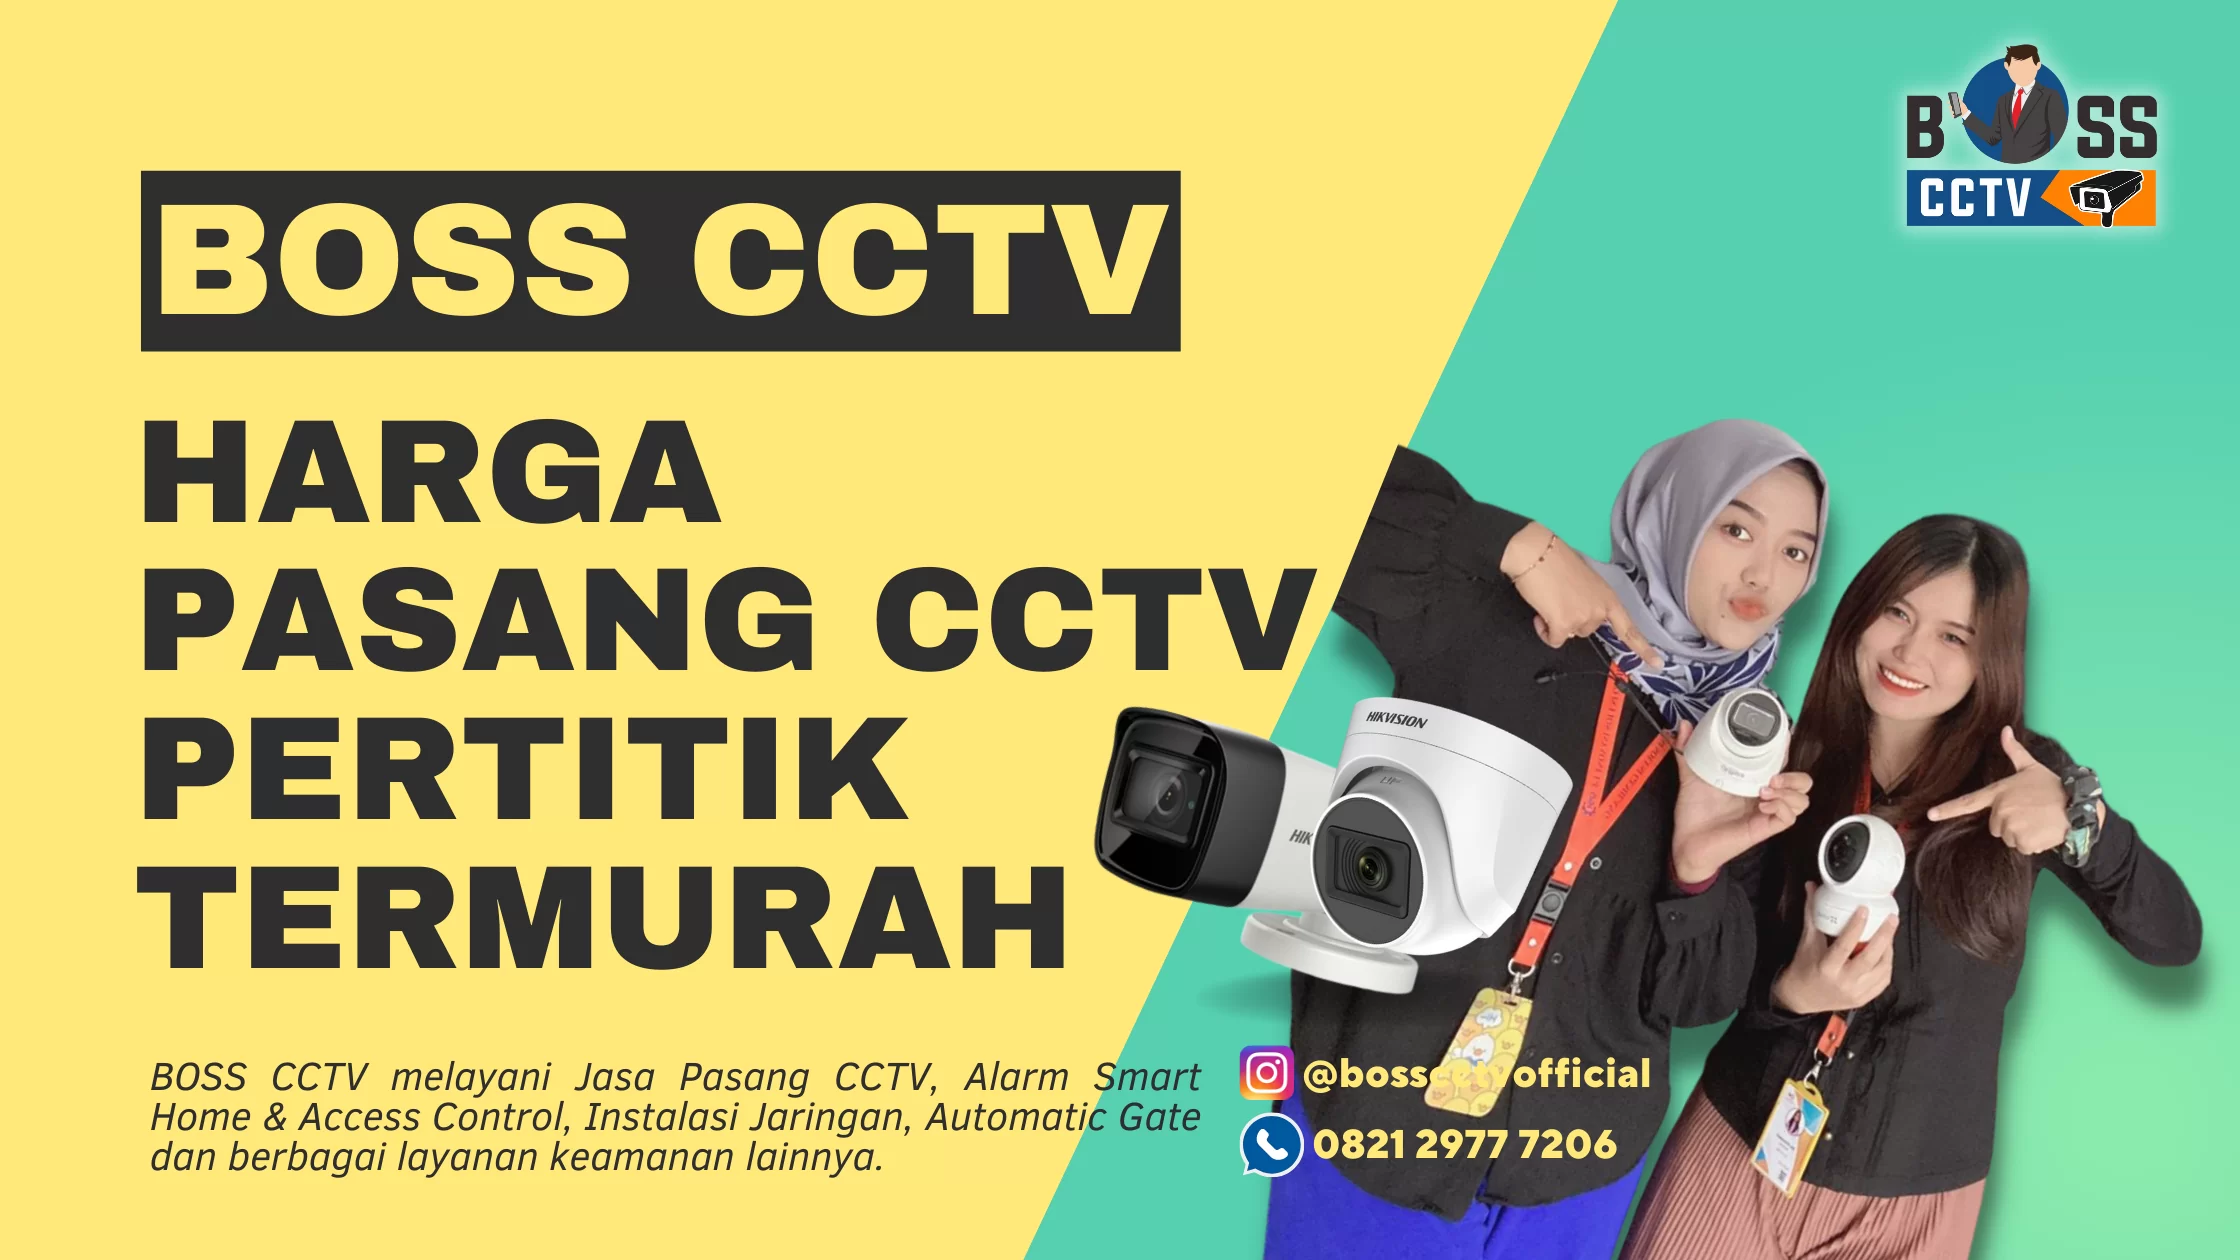 Harga Pasang CCTV Pertitik Termurah